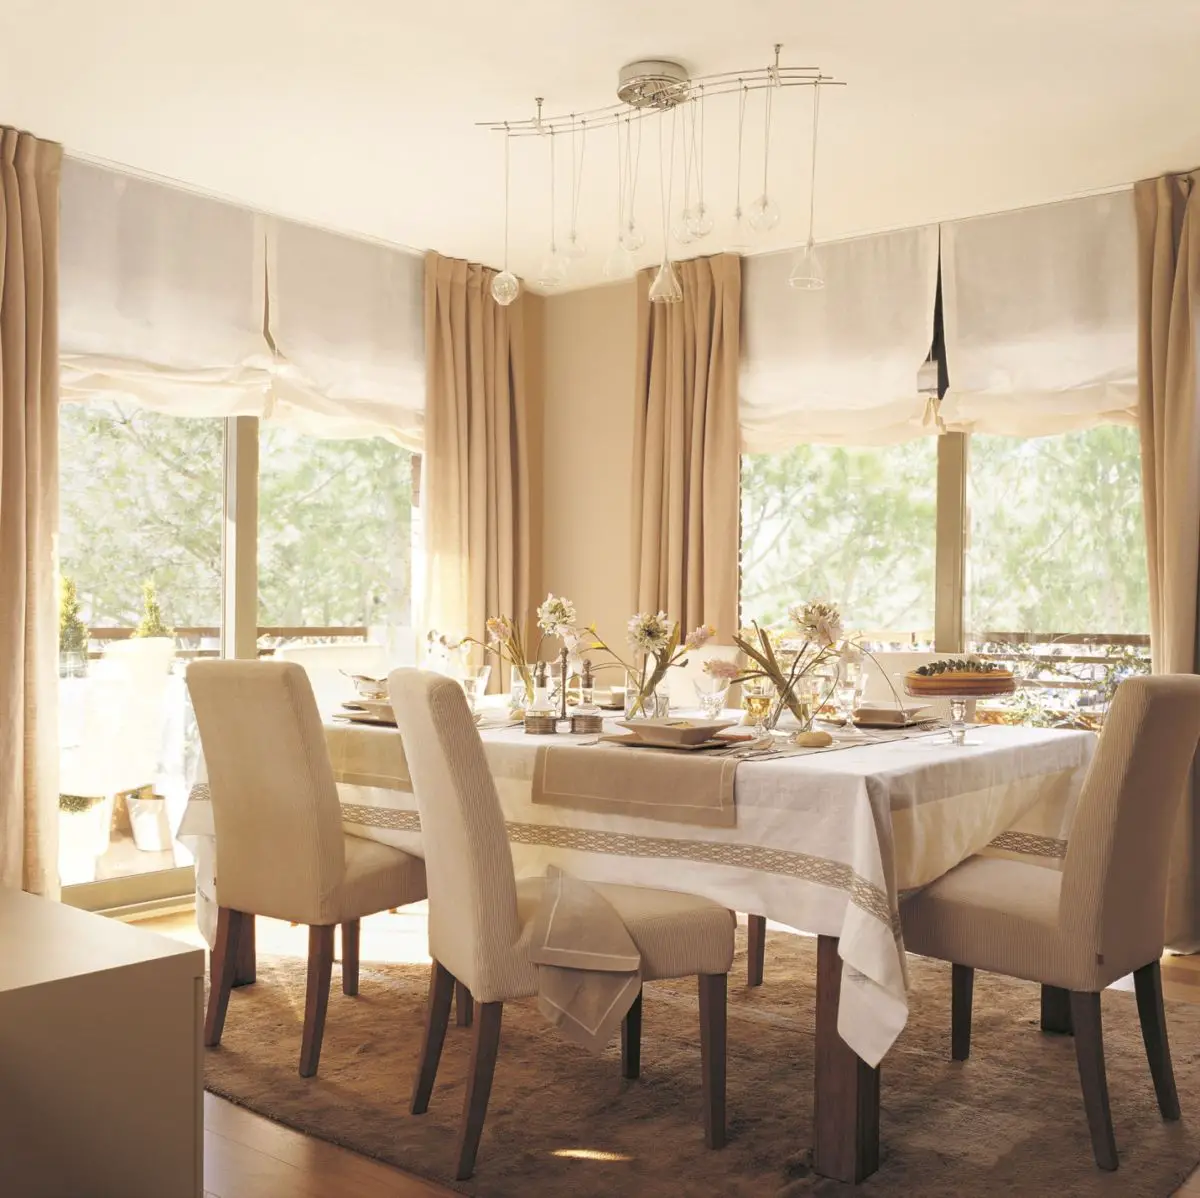 Dining room in beige tones. Dare to combine!